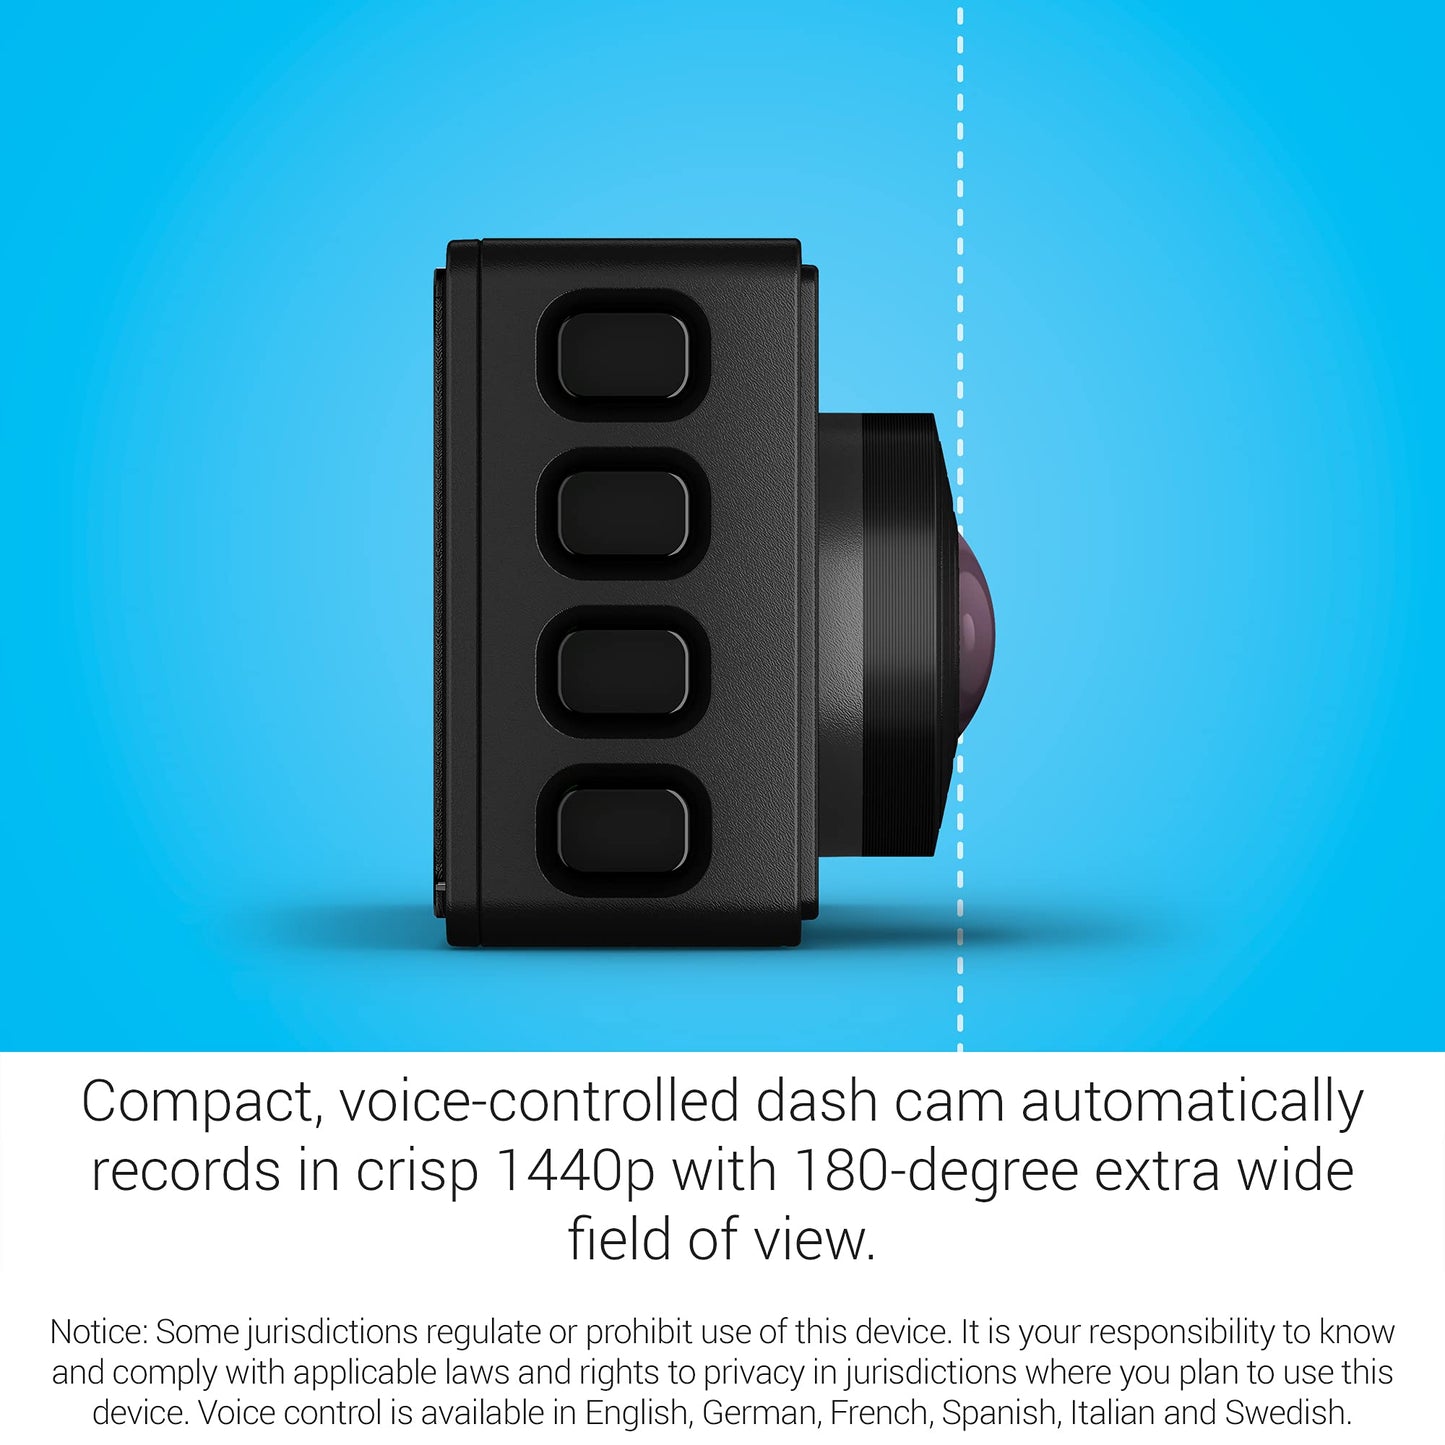 Garmin 010-02505-05 Dash Cam 67W, 1440p and extra-wide 180-degree FOV, Includes Memory Card